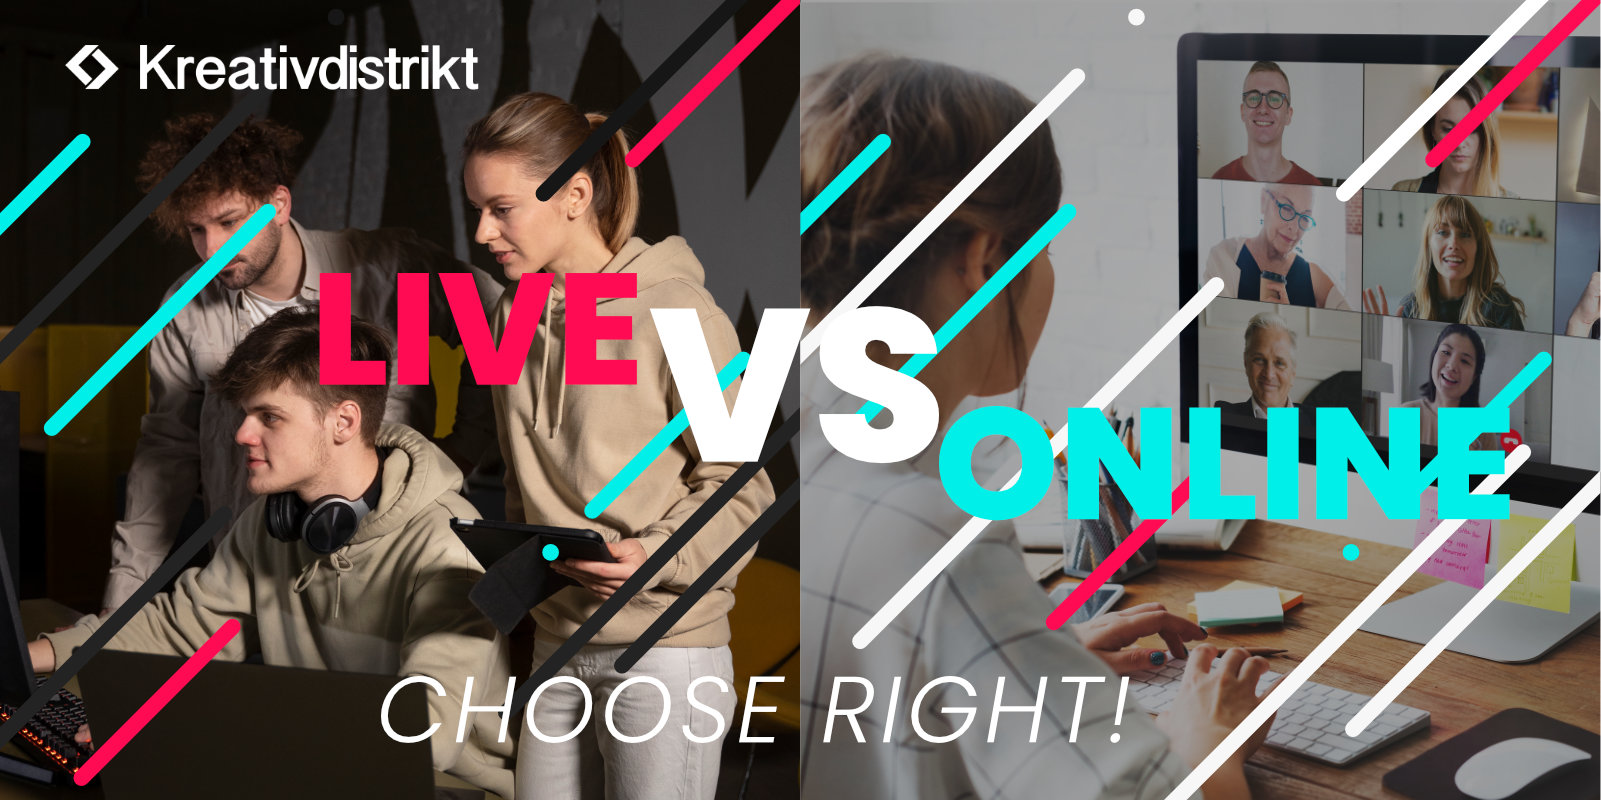 Live hackathon vs Online hackathon, choose right!